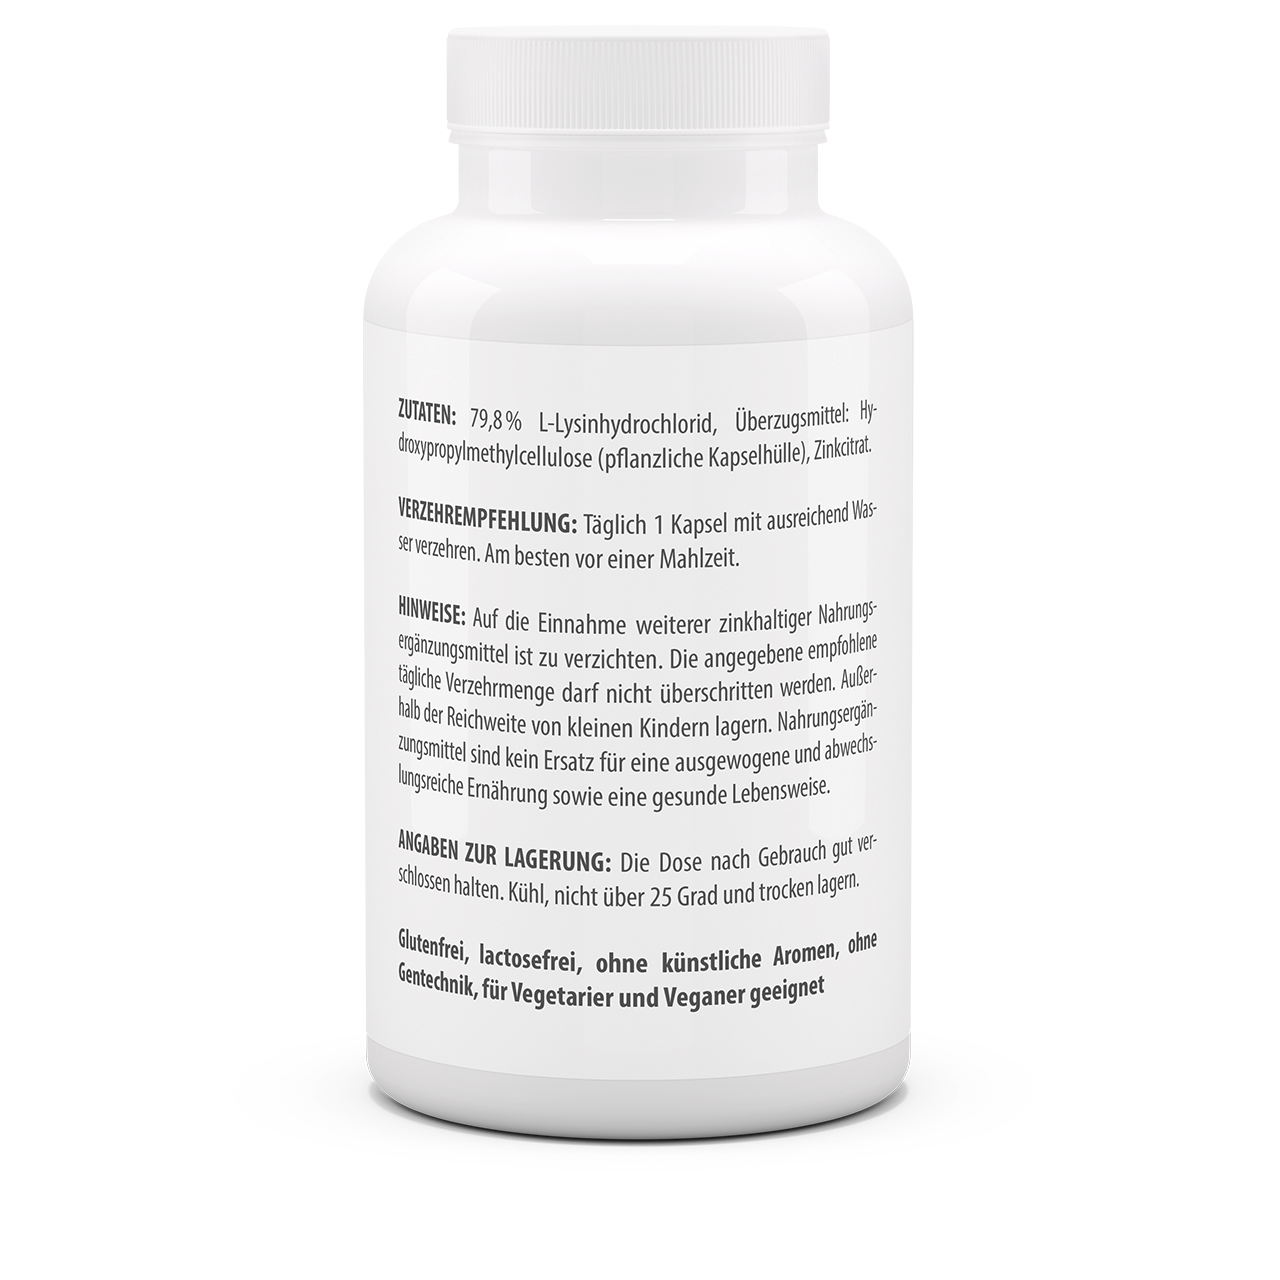 Lysin 600 mg plus Zink 10 mg (120 Kps)